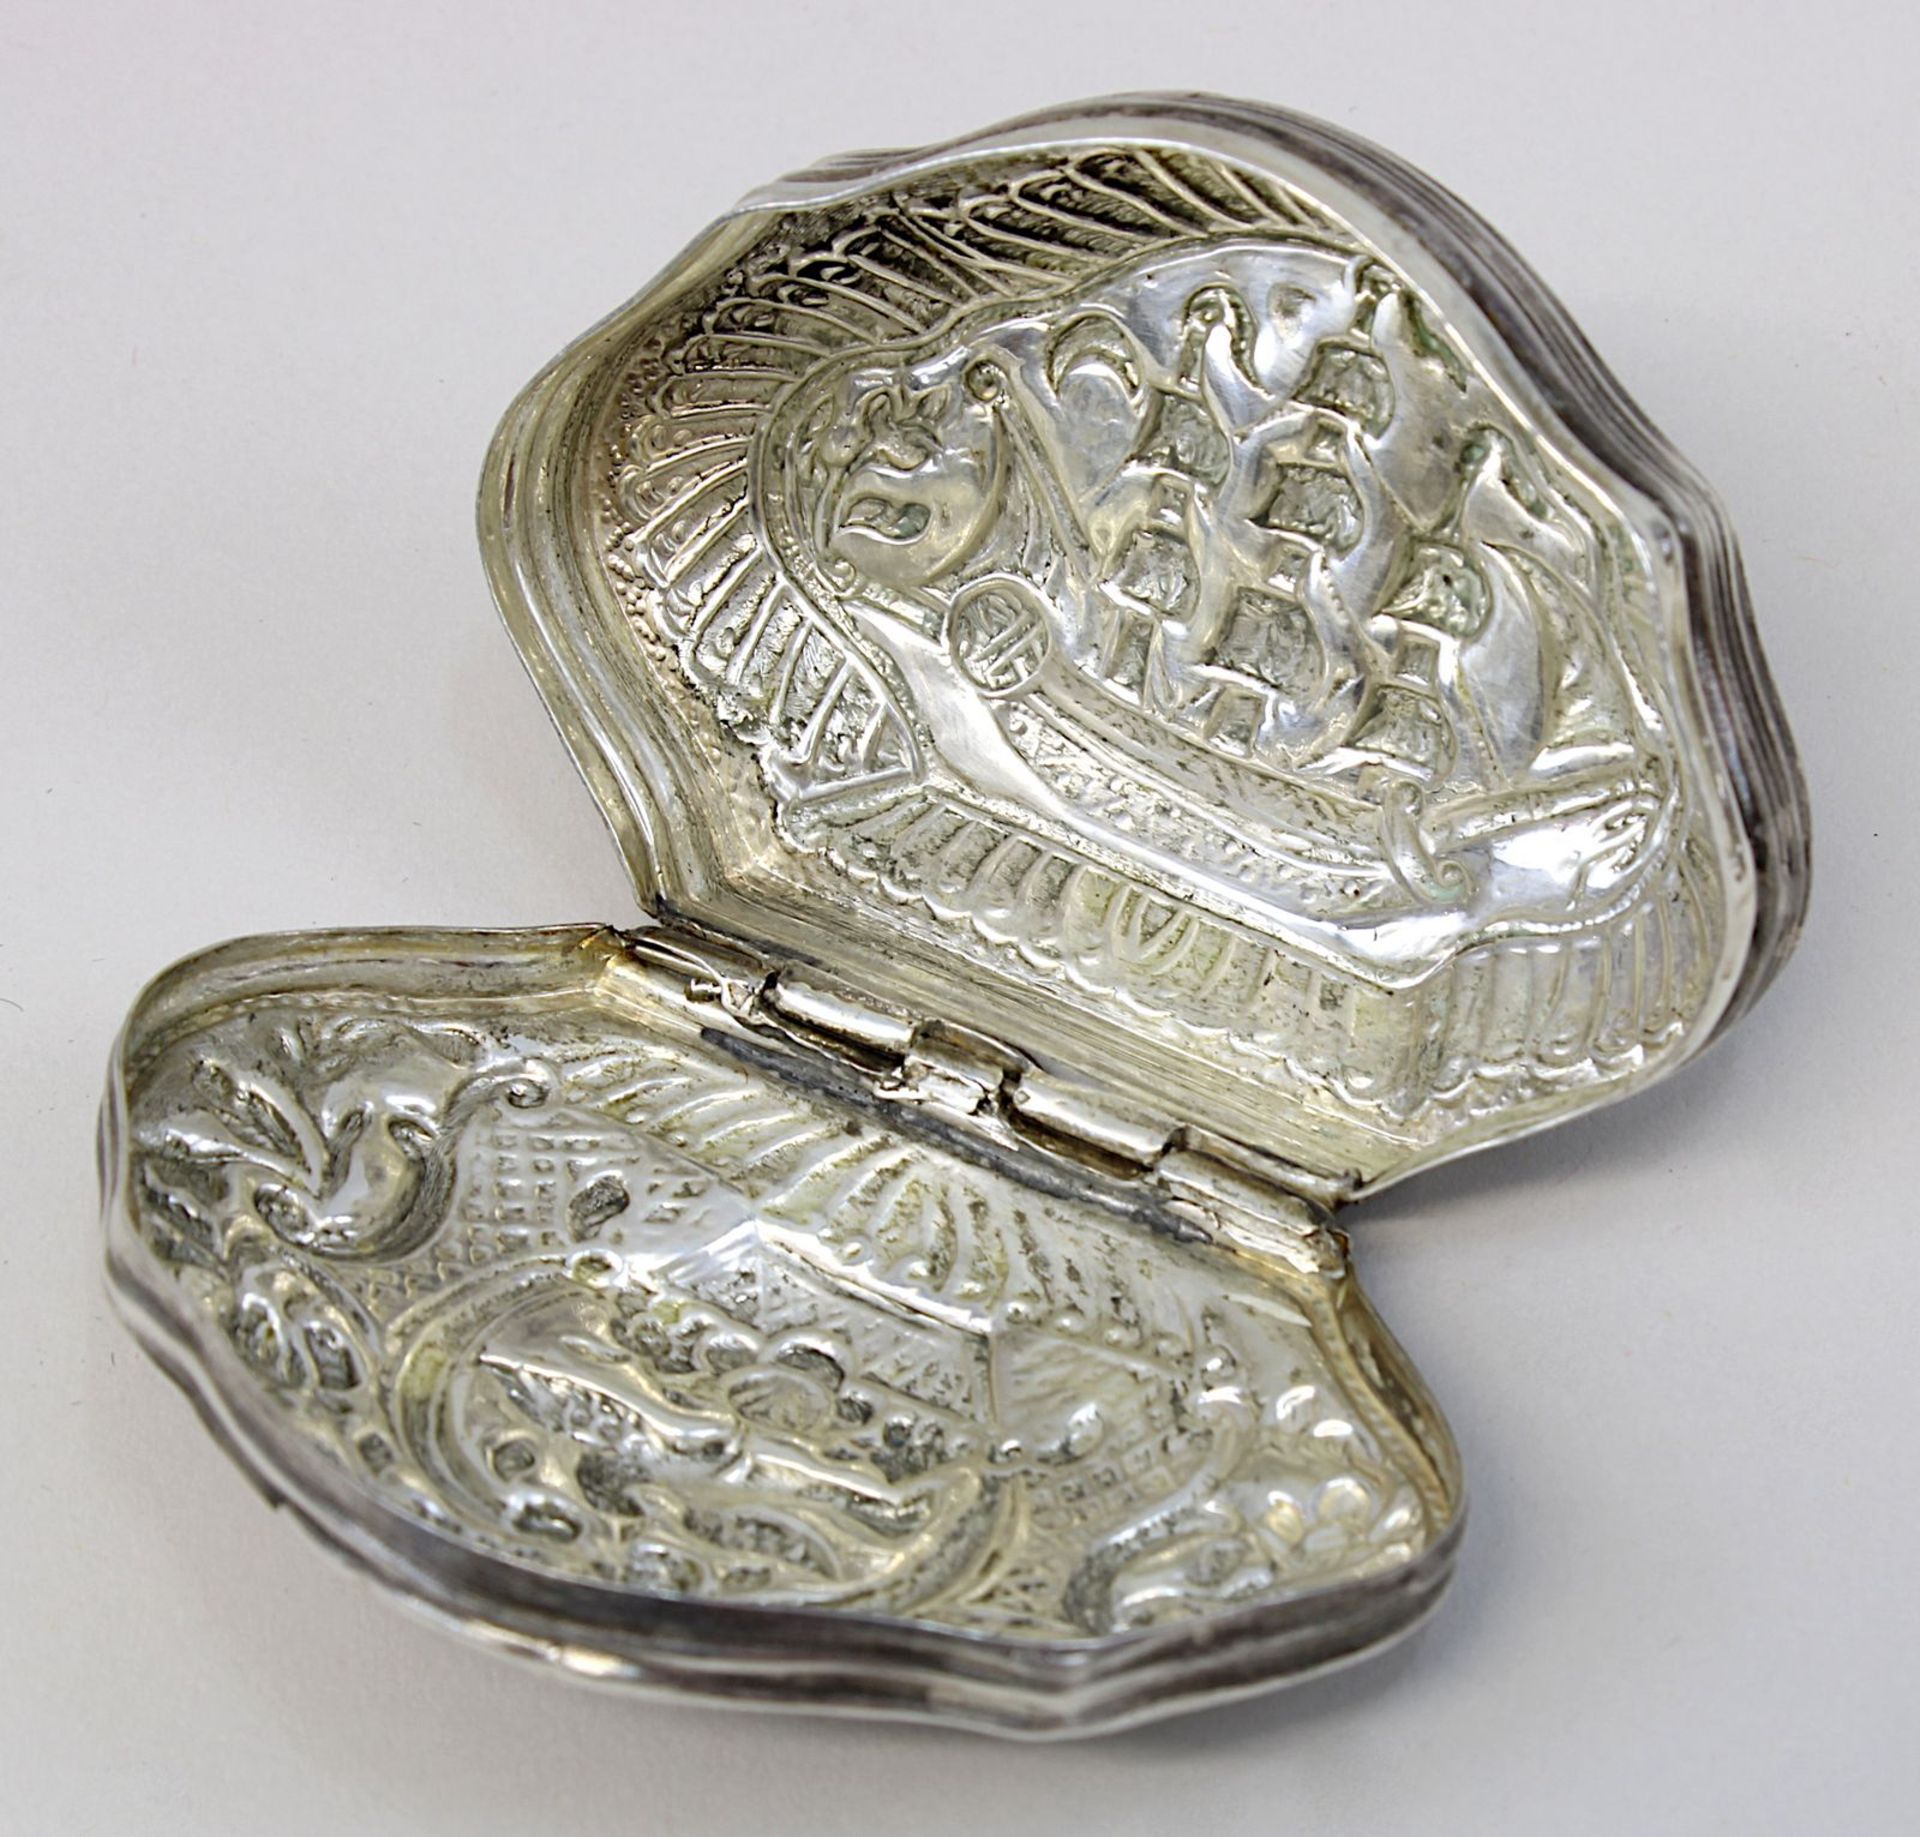 Silberdose mit Vogel- und Schiffsmotiv, geschweifte Form mit anscharniertem Deckel, getriebener - Bild 3 aus 3